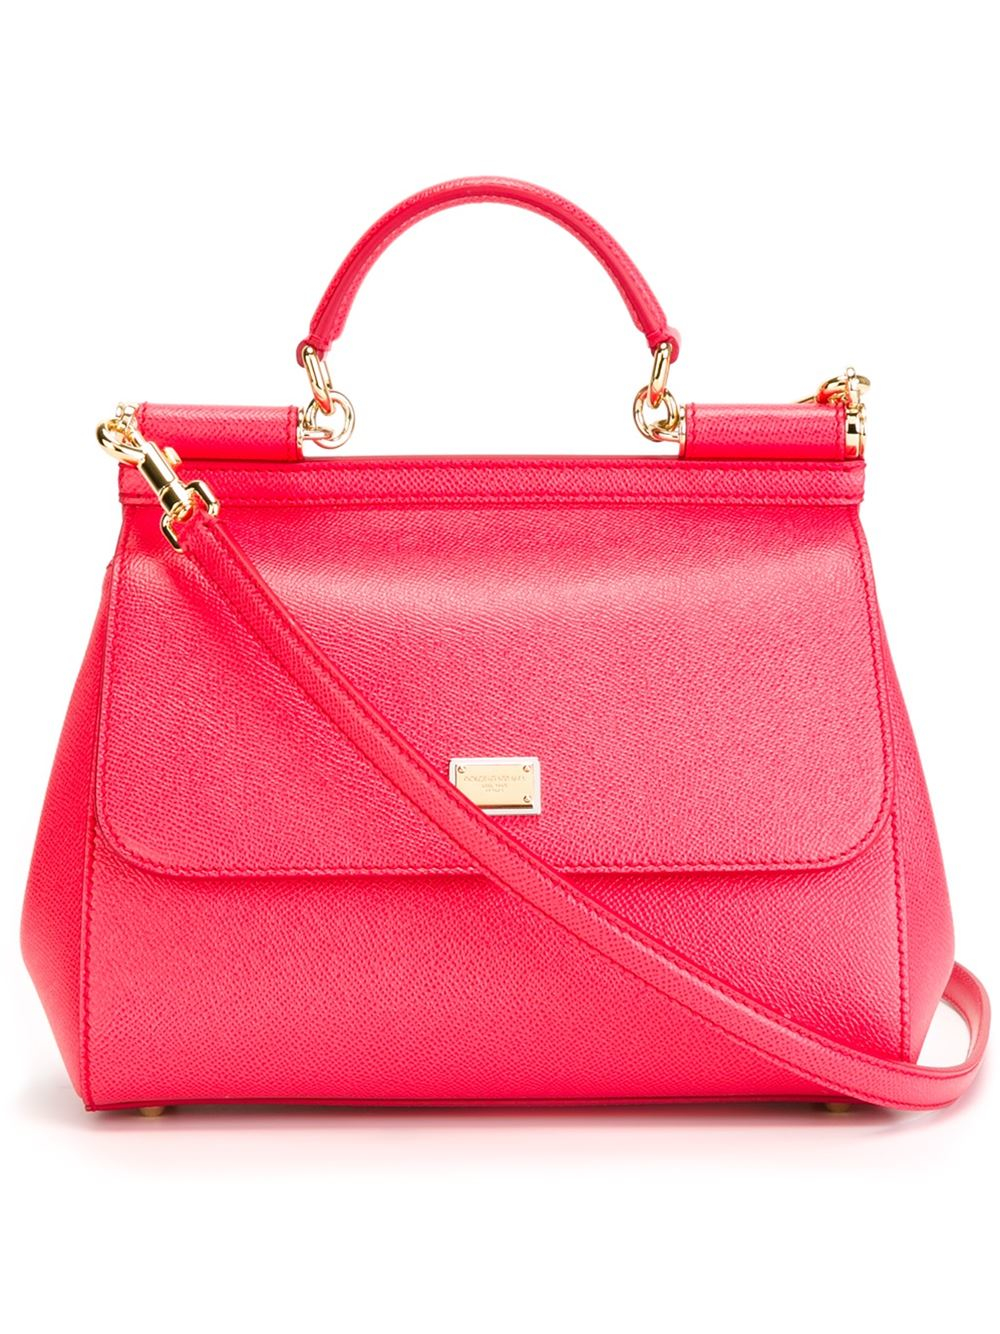 Dolce & Gabbana Miss Sicily Medium Handbag in Pink - Lyst